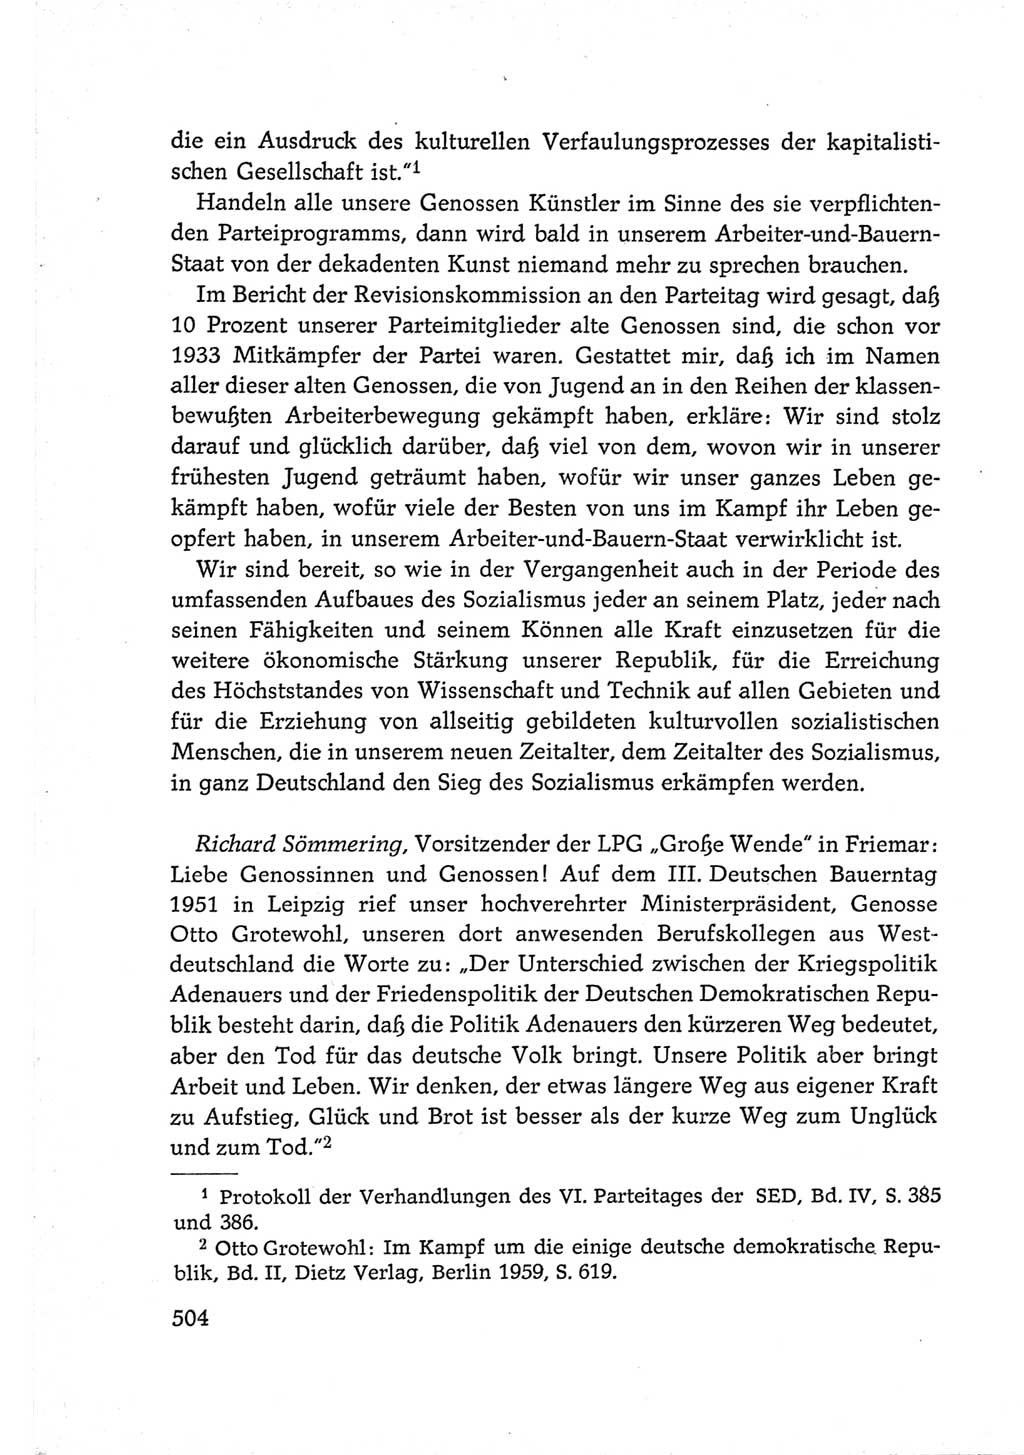 Protokoll der Verhandlungen des Ⅵ. Parteitages der Sozialistischen Einheitspartei Deutschlands (SED) [Deutsche Demokratische Republik (DDR)] 1963, Band Ⅲ, Seite 504 (Prot. Verh. Ⅵ. PT SED DDR 1963, Bd. Ⅲ, S. 504)